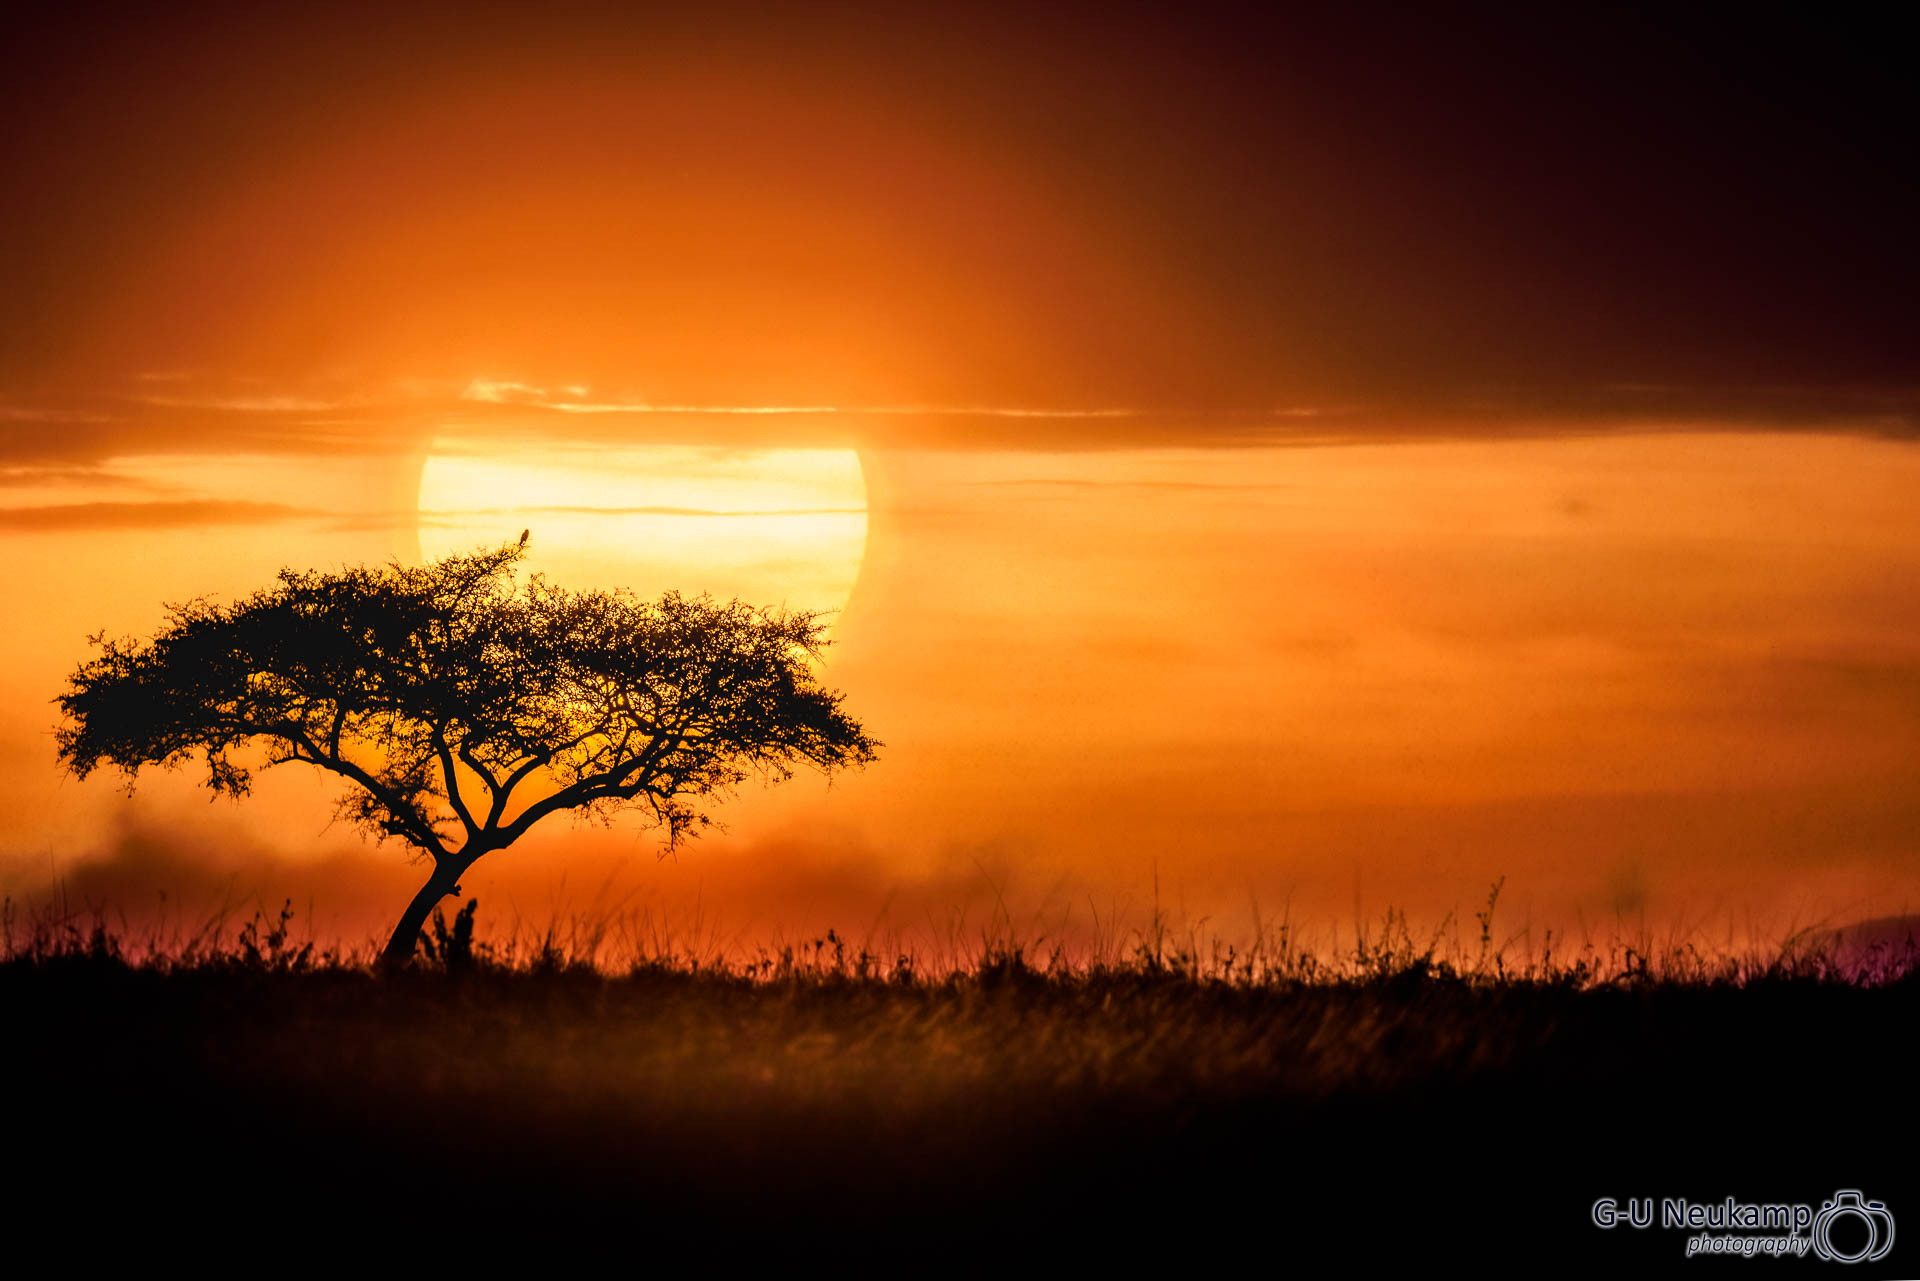 Sunrise in the Masai Mara, Kenya